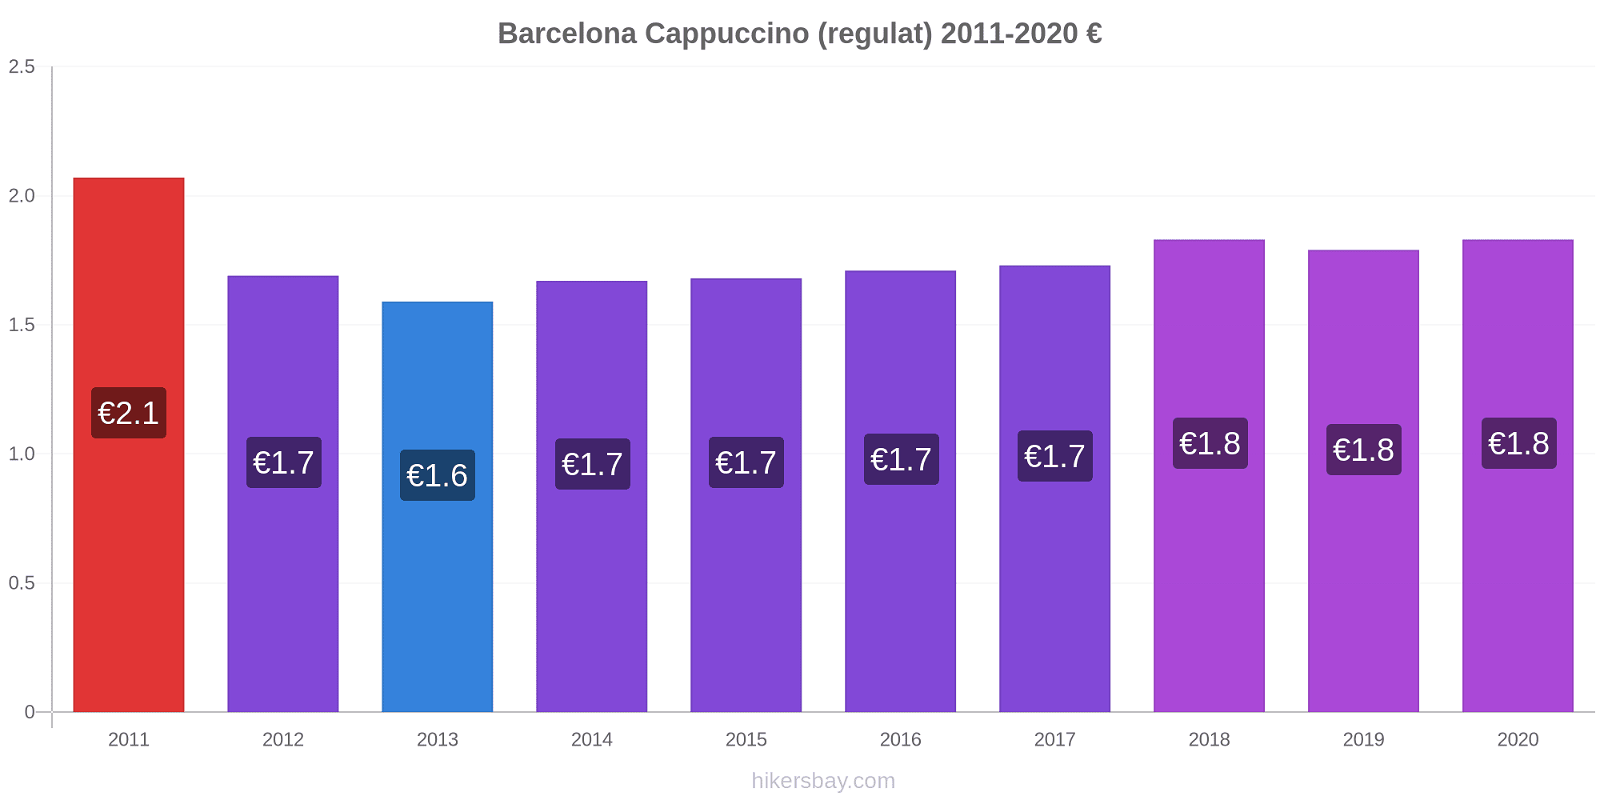 Barcelona modificări de preț Cappuccino (regulat) hikersbay.com